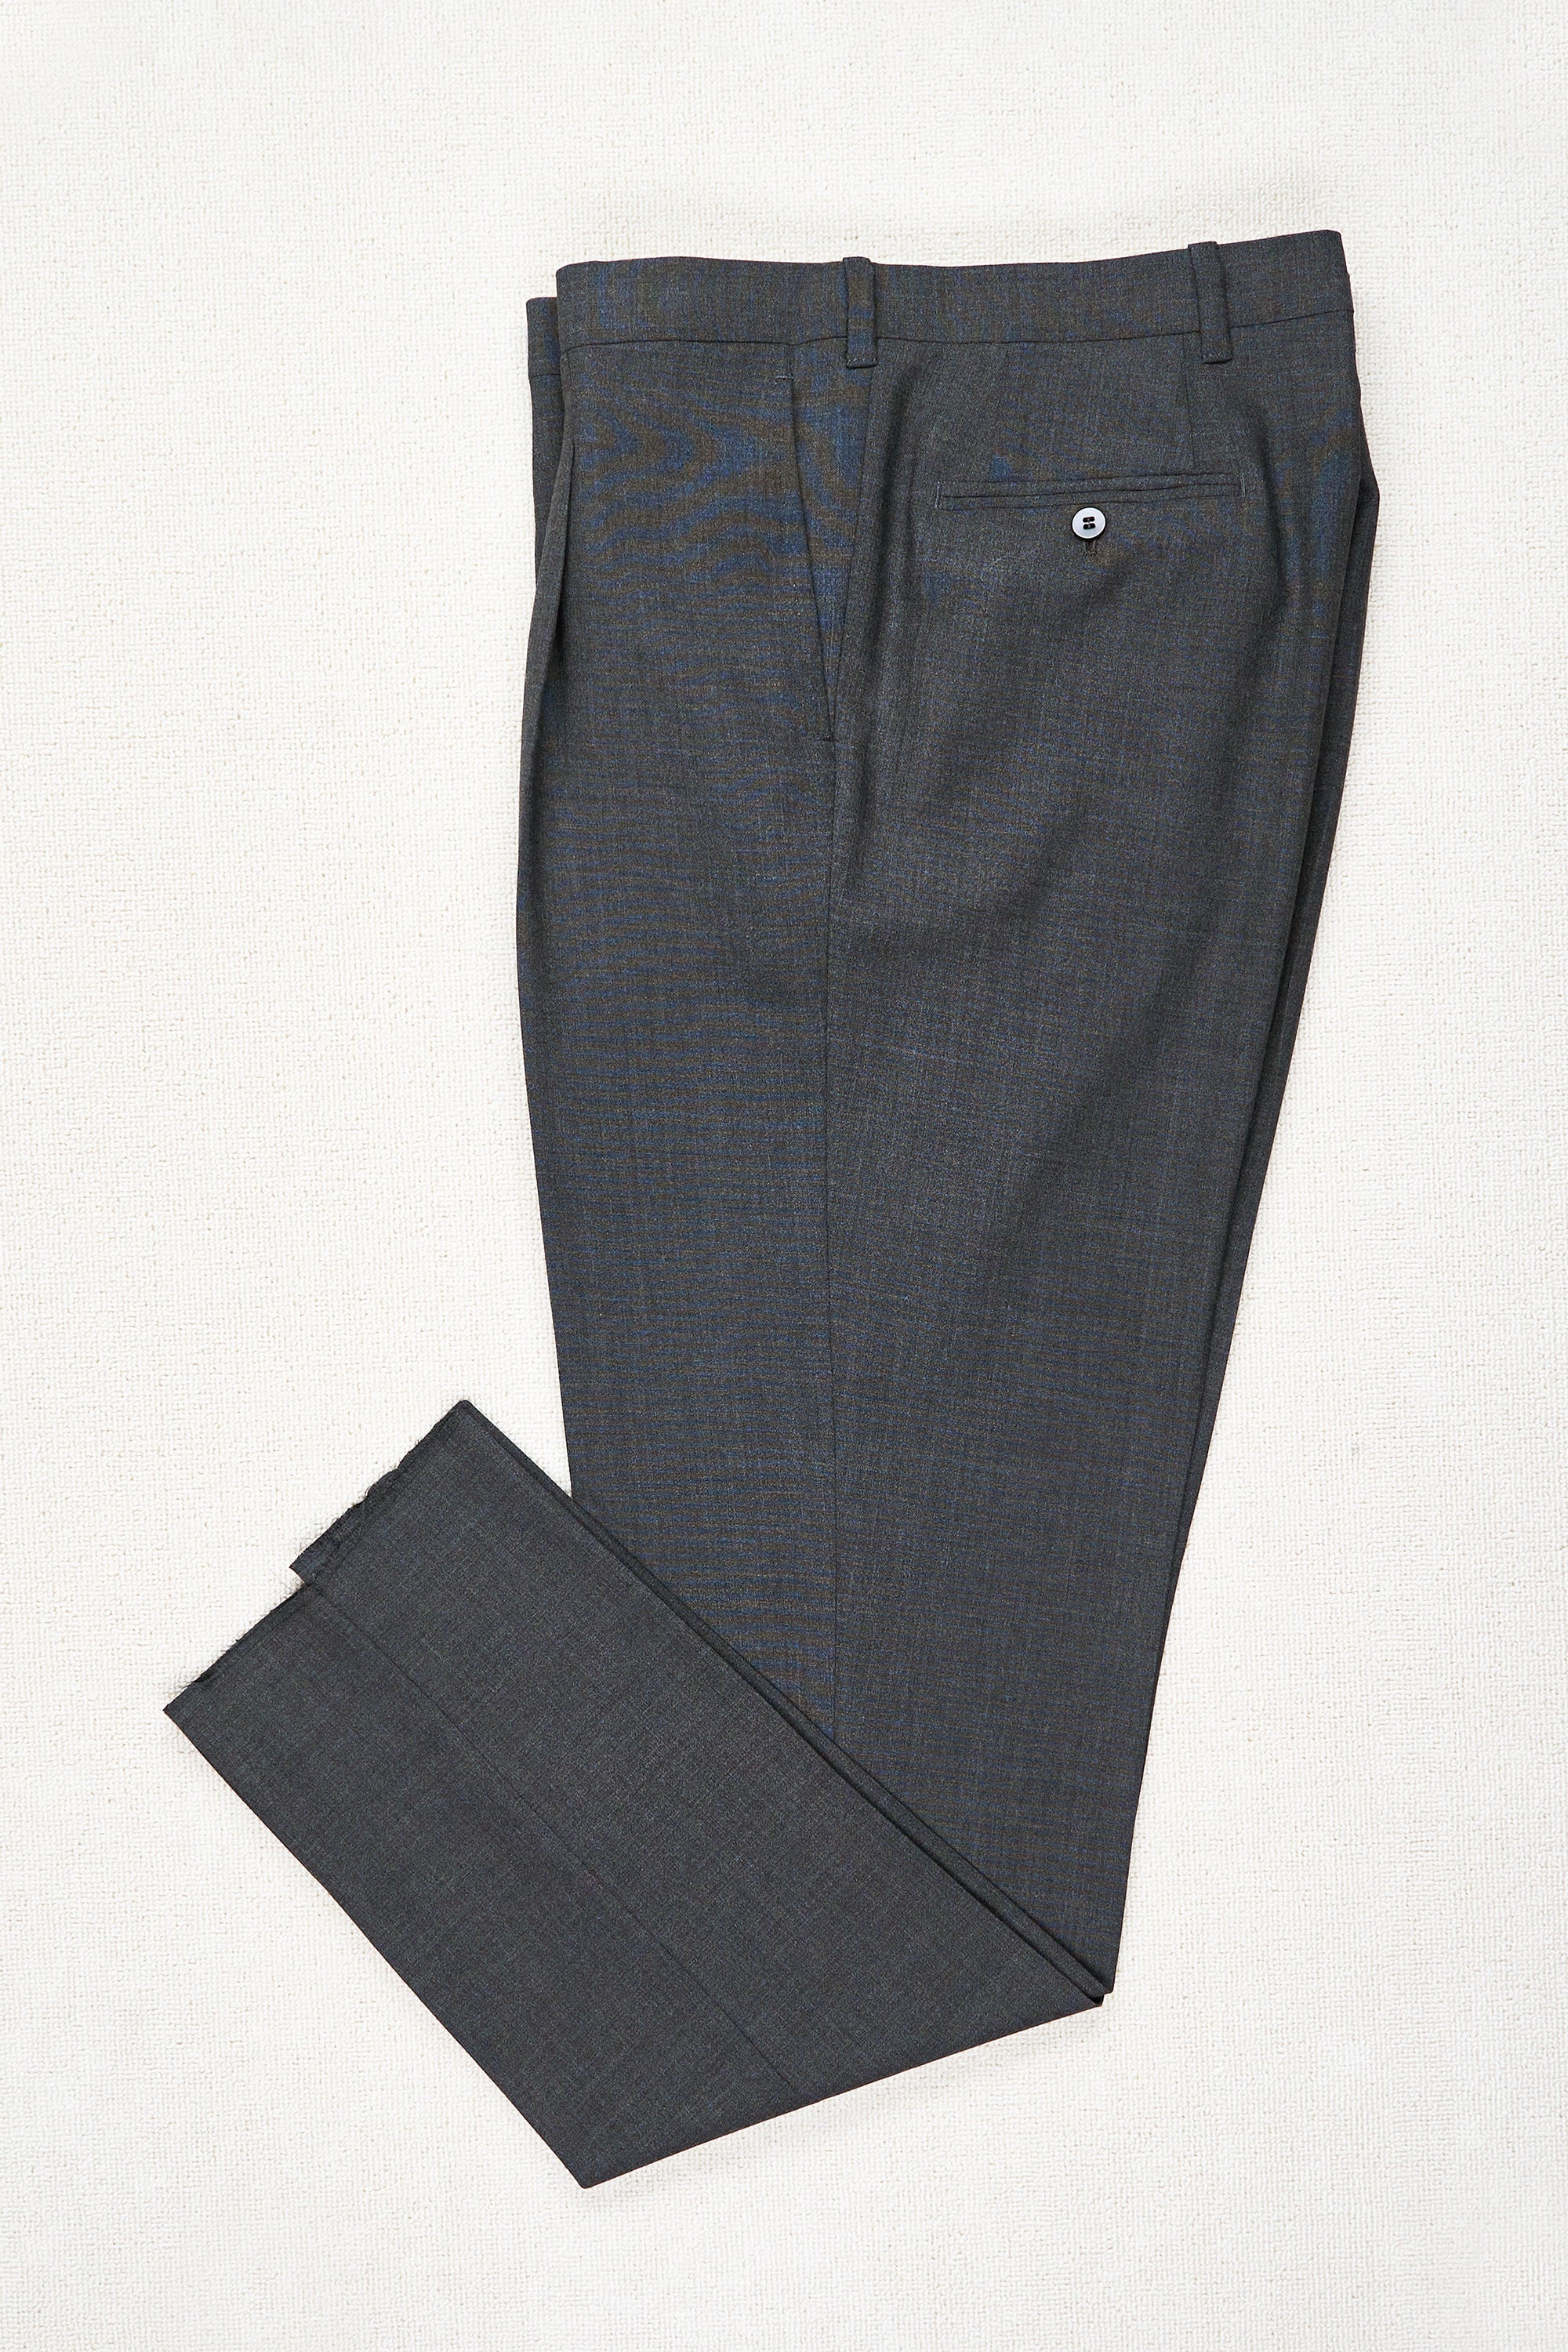 Orazio Luciano Grey Wool Single Pleat Trousers Bespoke